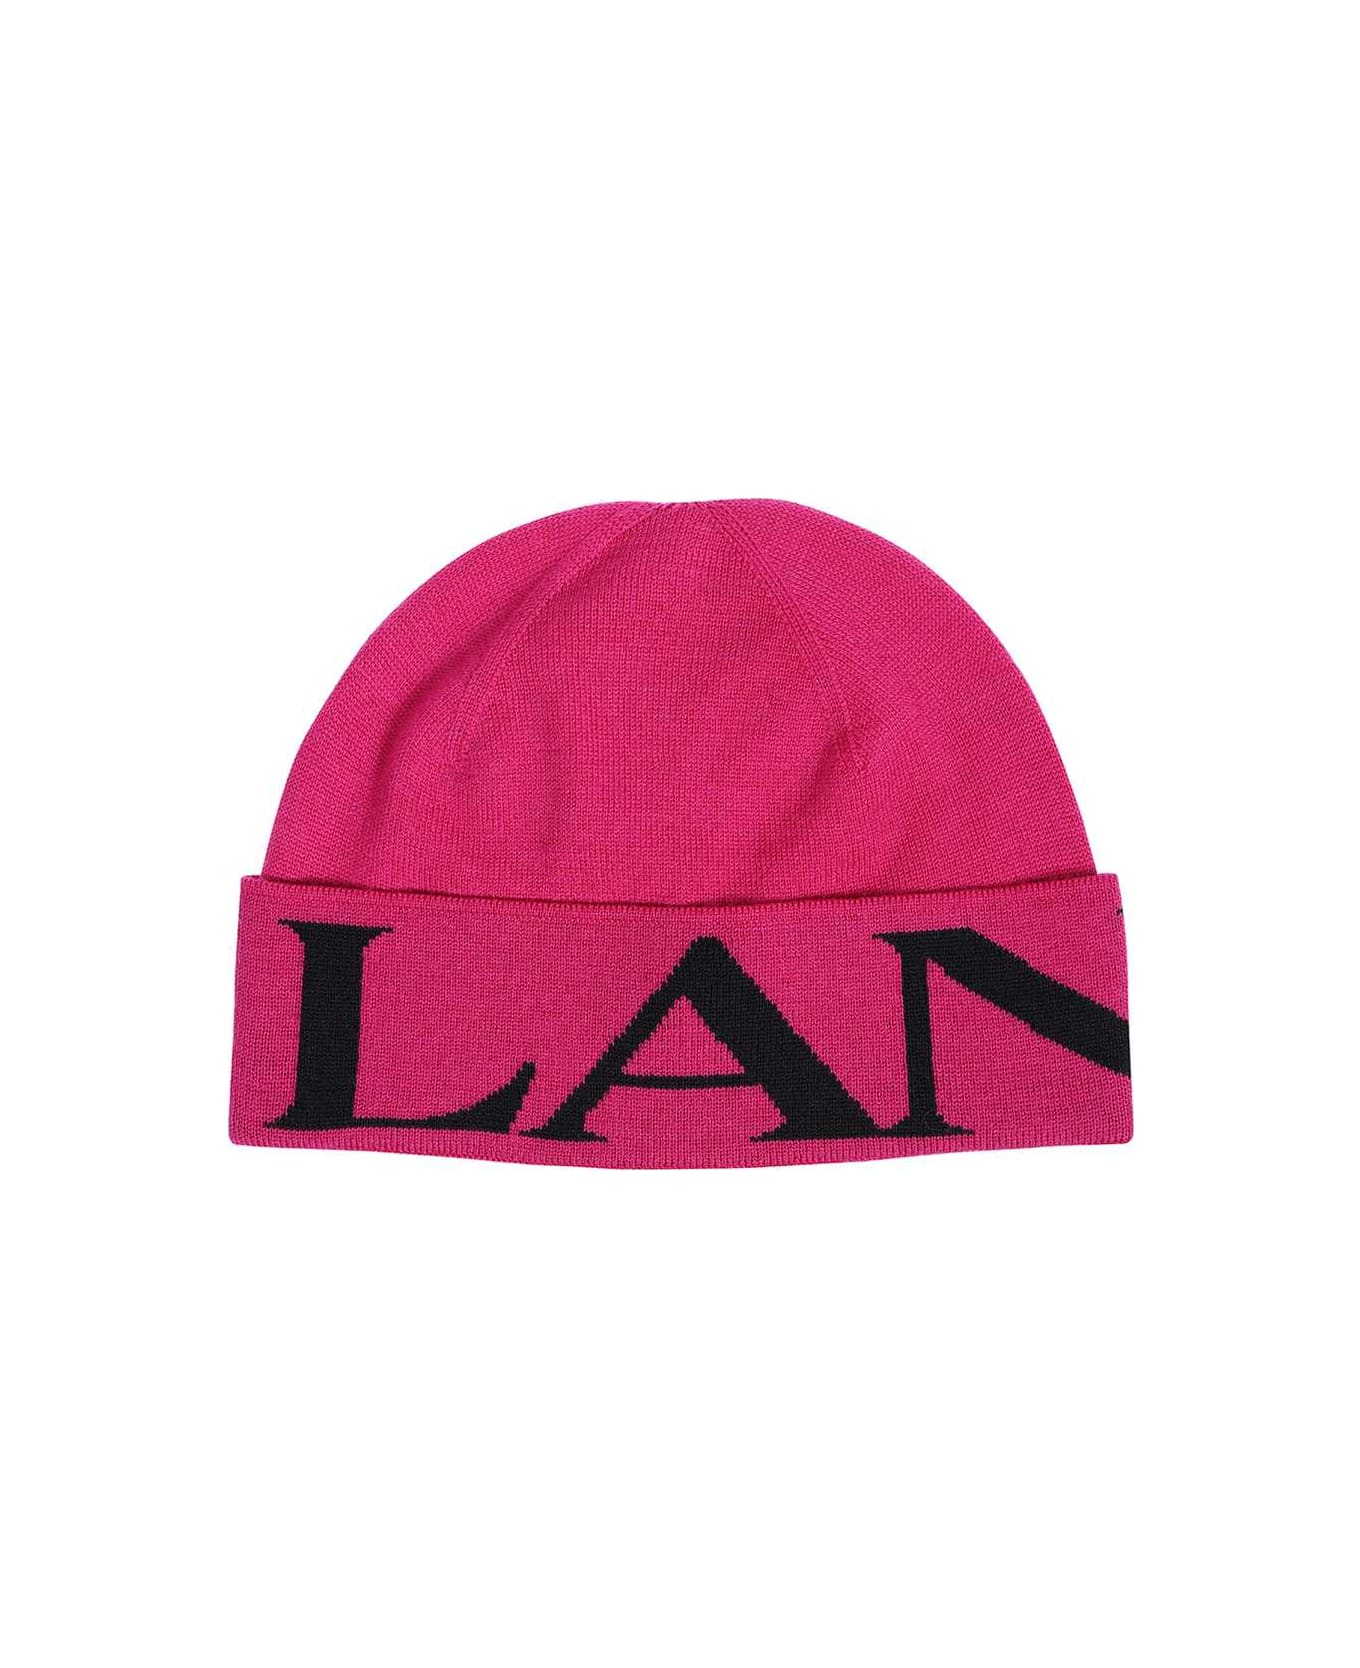 Lanvin Wool Hat - Fuchsia 帽子